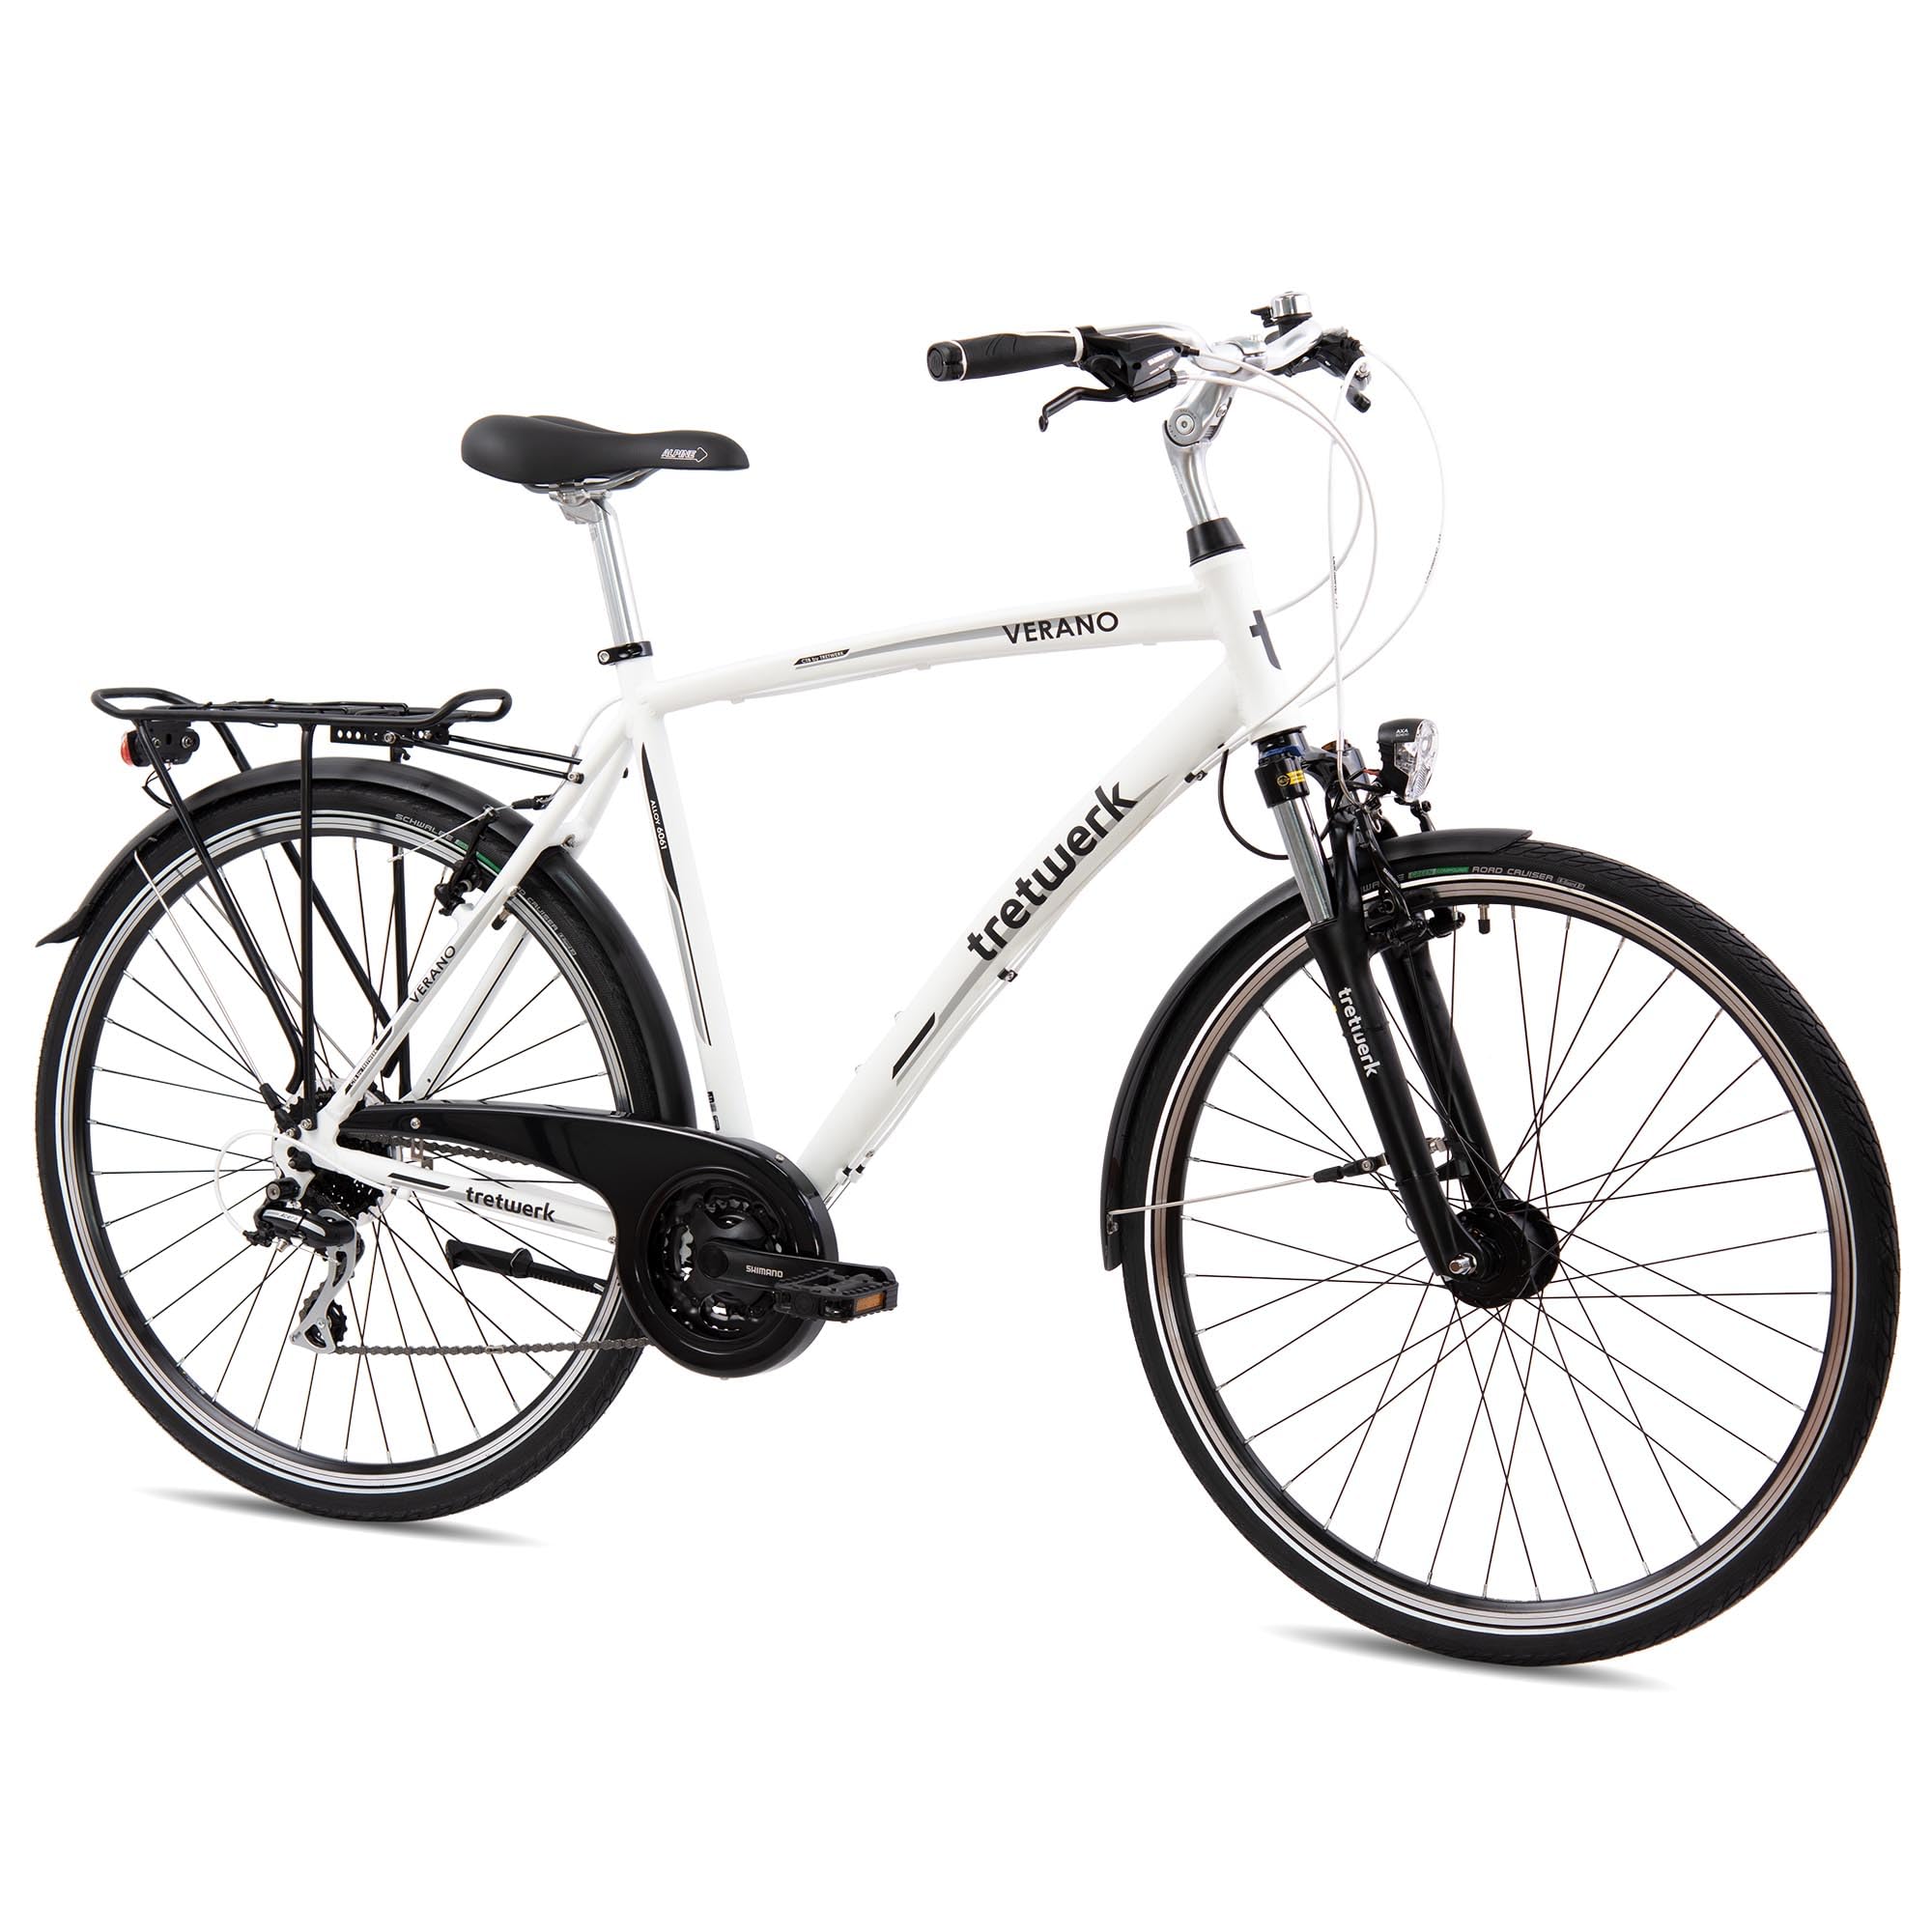 Tretwerk - 28 Zoll Herren Fahrrad - Verano weiß 56 cm - Citybike mit 24 Gang Shimano Schaltung - Herrenfahrrad mit LED-Beleuchtung - Cityrad für Männer